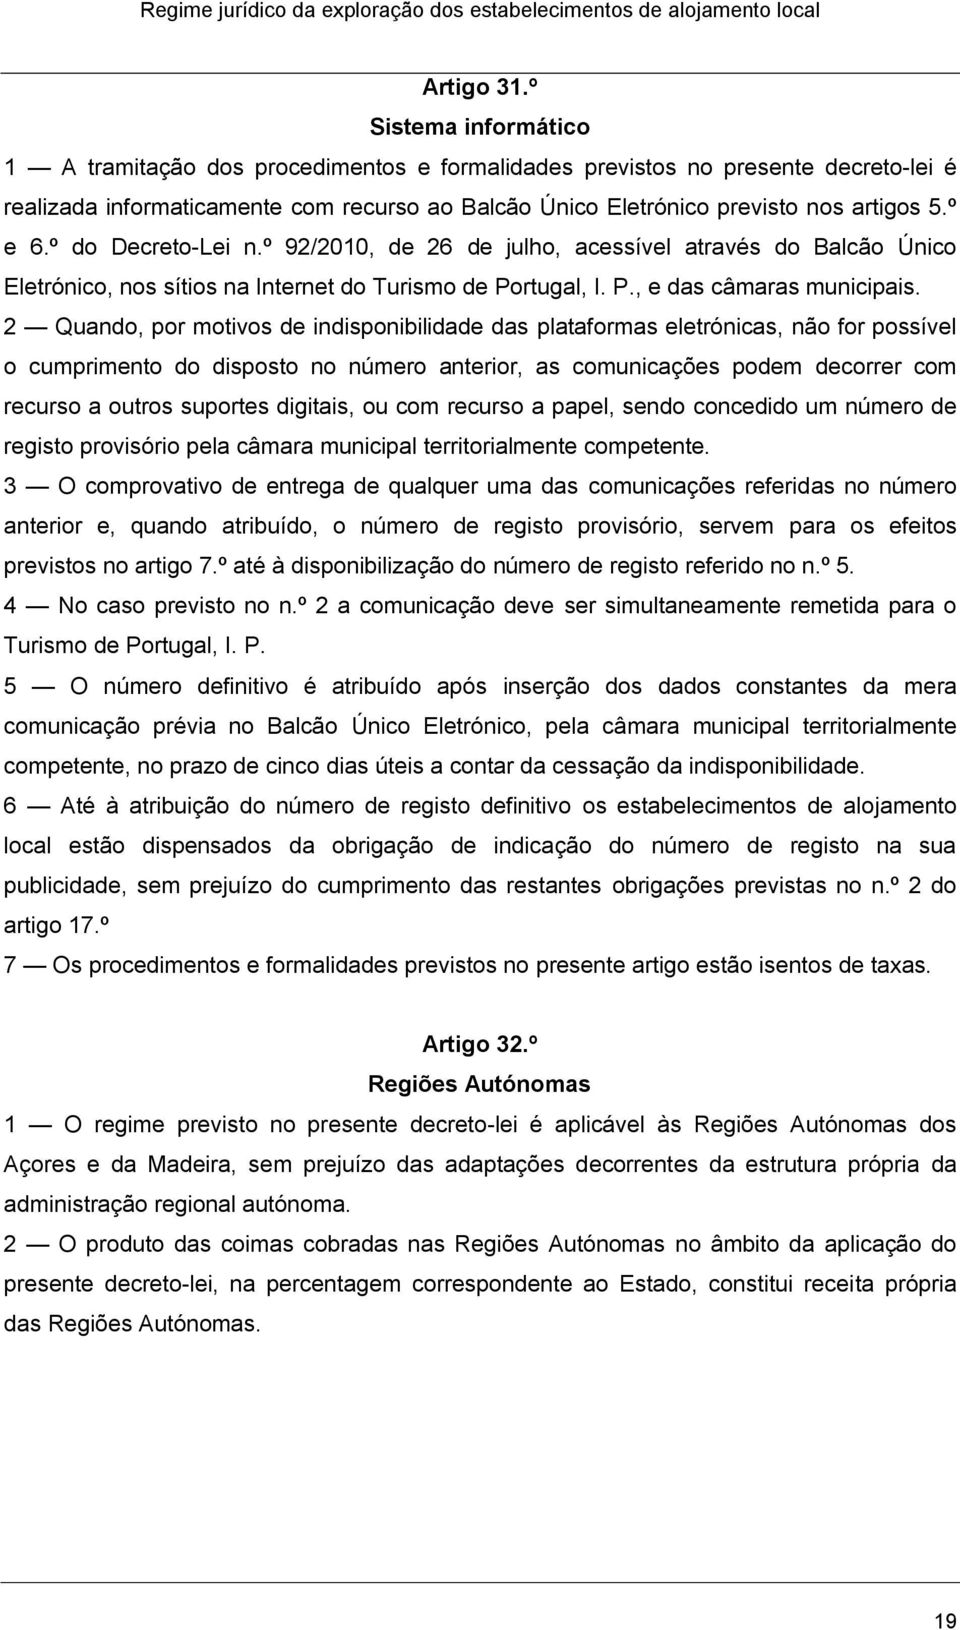 º e 6.º do Decreto-Lei n.º 92/2010, de 26 de julho, acessível através do Balcão Único Eletrónico, nos sítios na Internet do Turismo de Portugal, I. P., e das câmaras municipais.